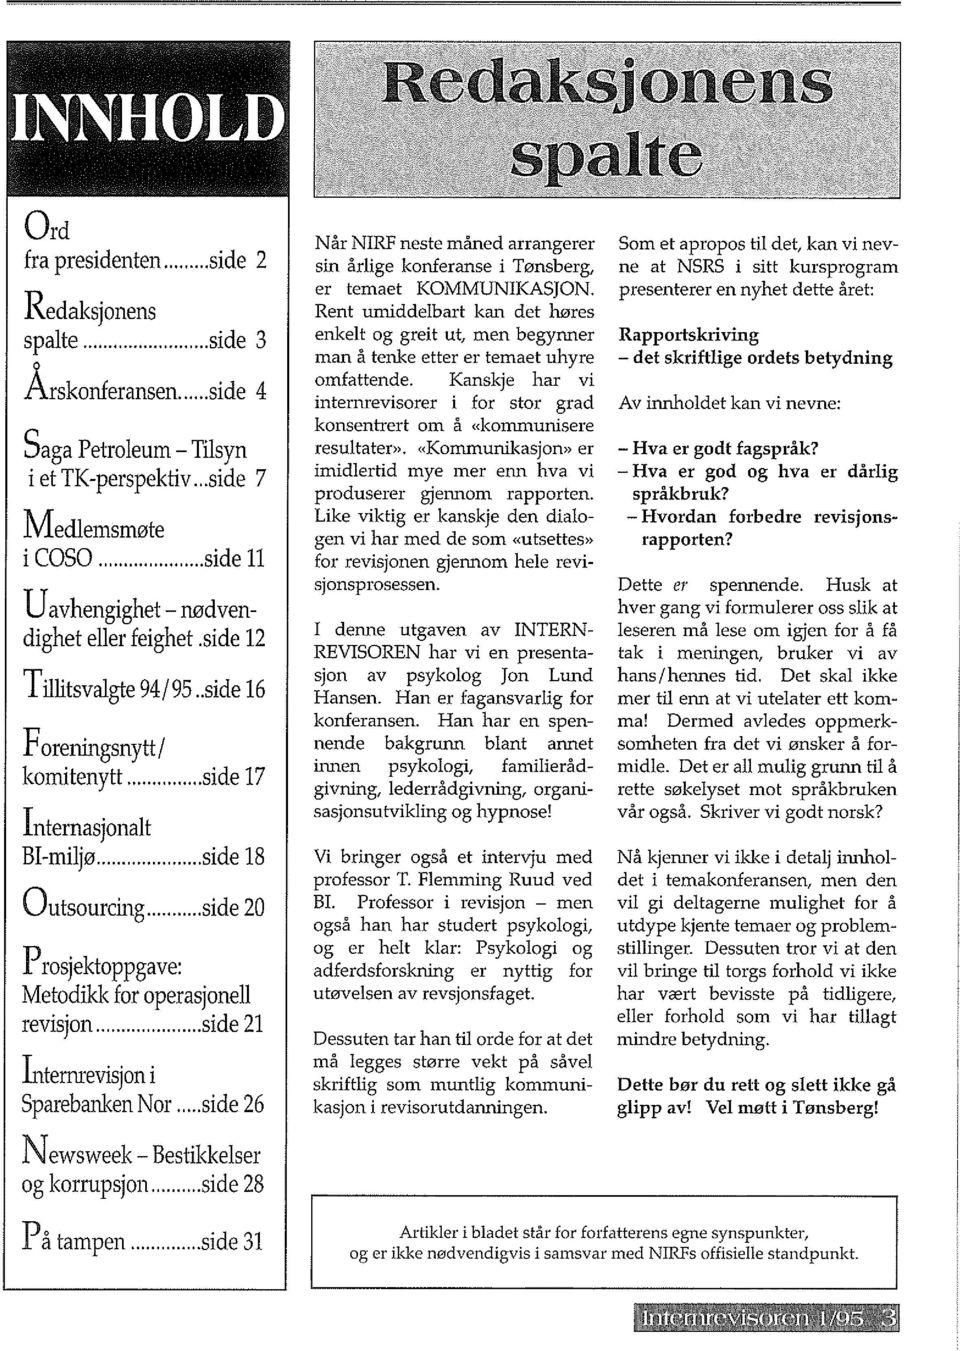 .. side 20 Prosjektoppgave: Metodikk for operasjonell revisjon... side 21 lnternrevisjon i Sparebanken Nor... side 26 Newsweek - Bestikkelser og korrupsjon.